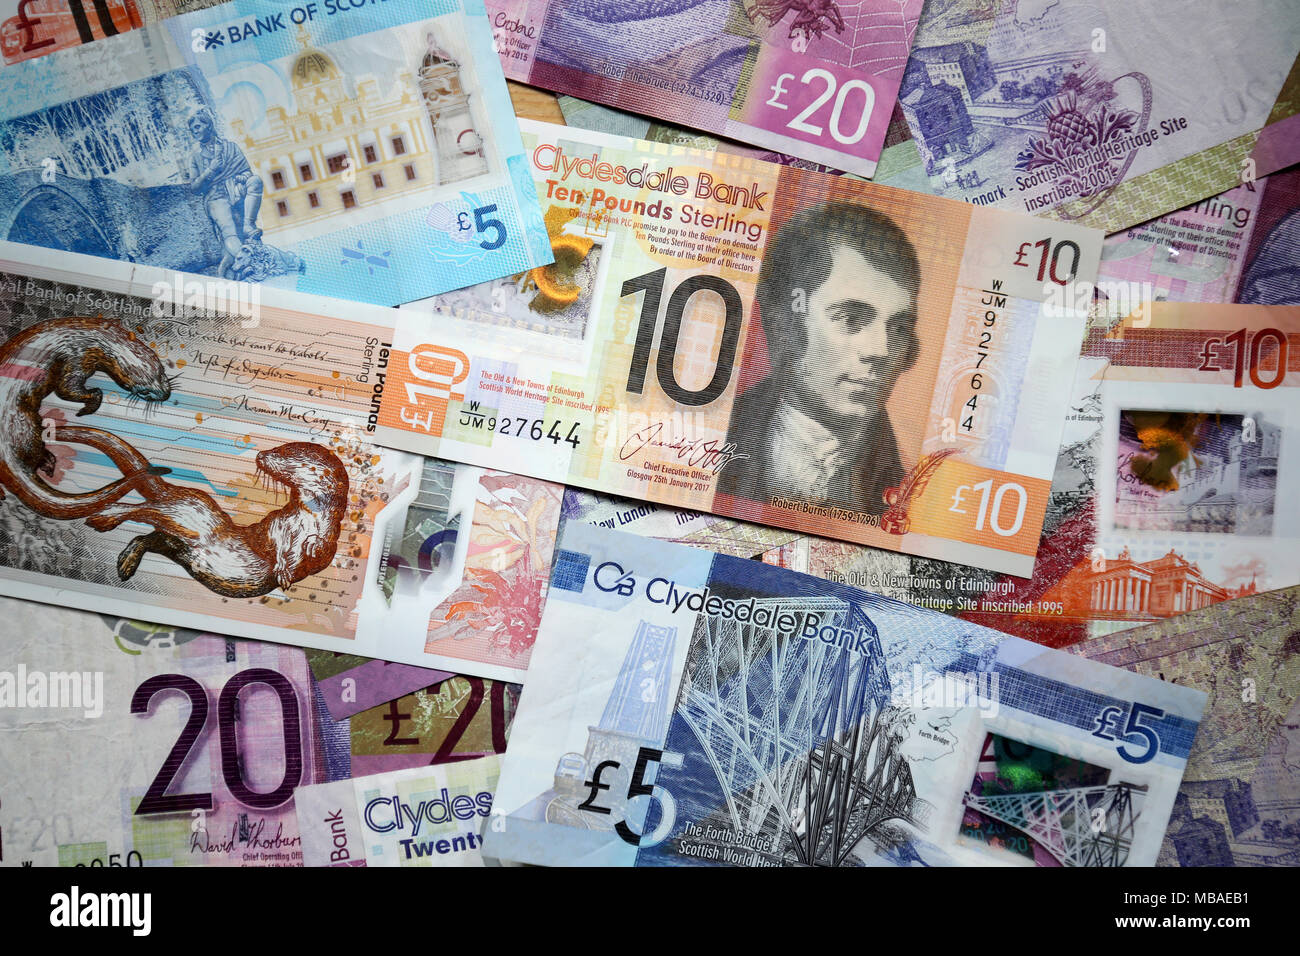 Scottish bank notes. Stock Photo